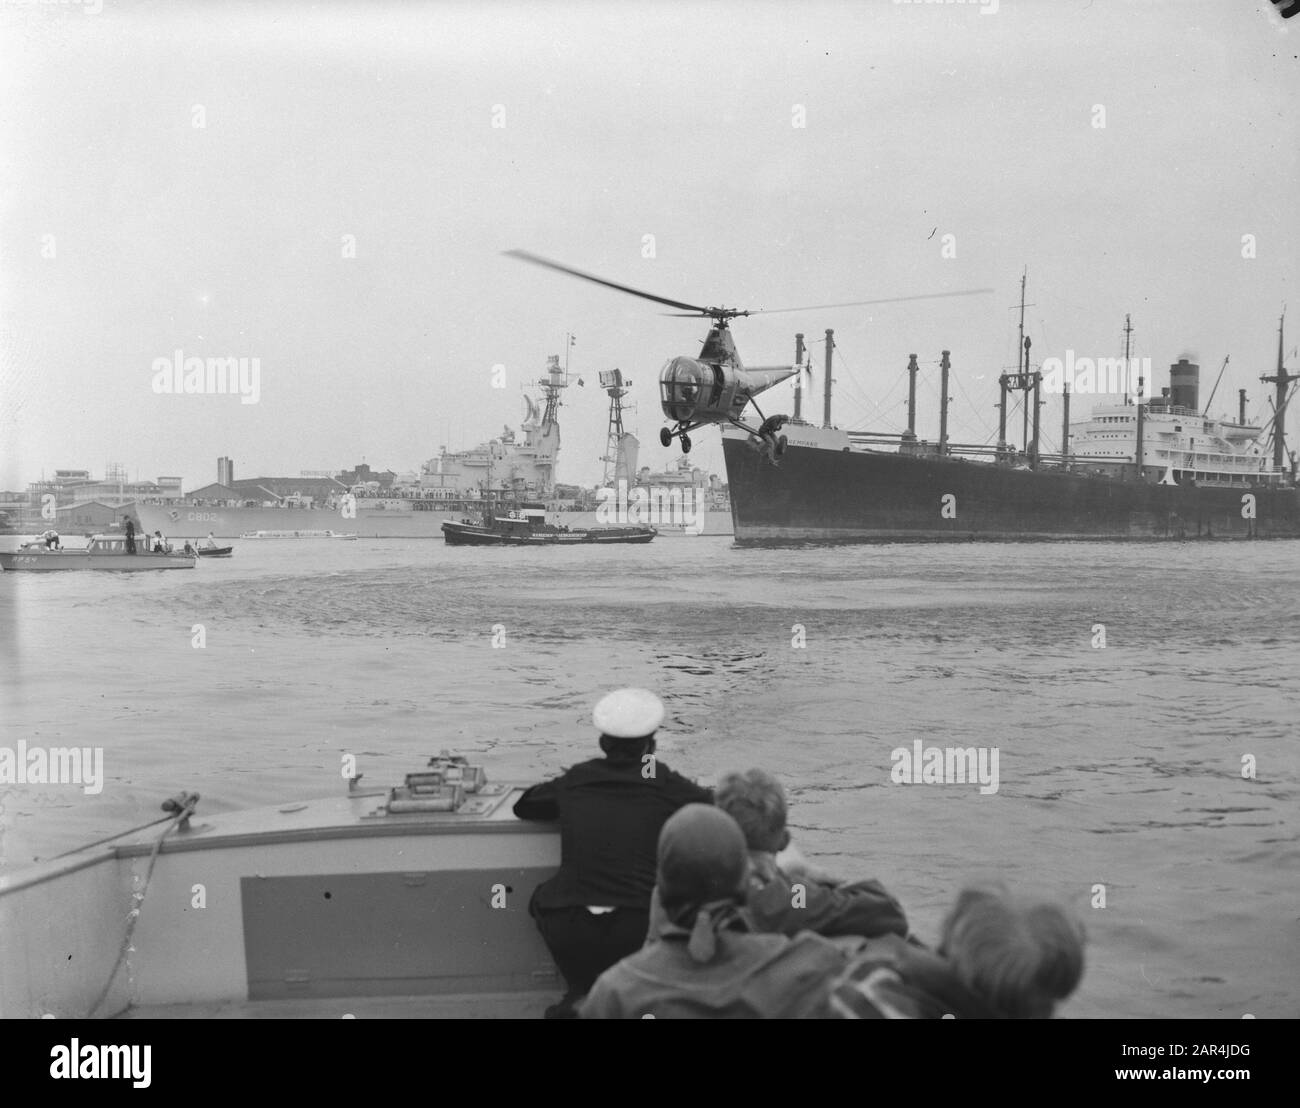 Démonstration de plongée Amsterdam durant la flotte Schouw, hélicoptère Date : 6 septembre 1958 lieu : Amsterdam, Noord-Holland mots clés : hélicoptères, marine, vlootschouwen Banque D'Images